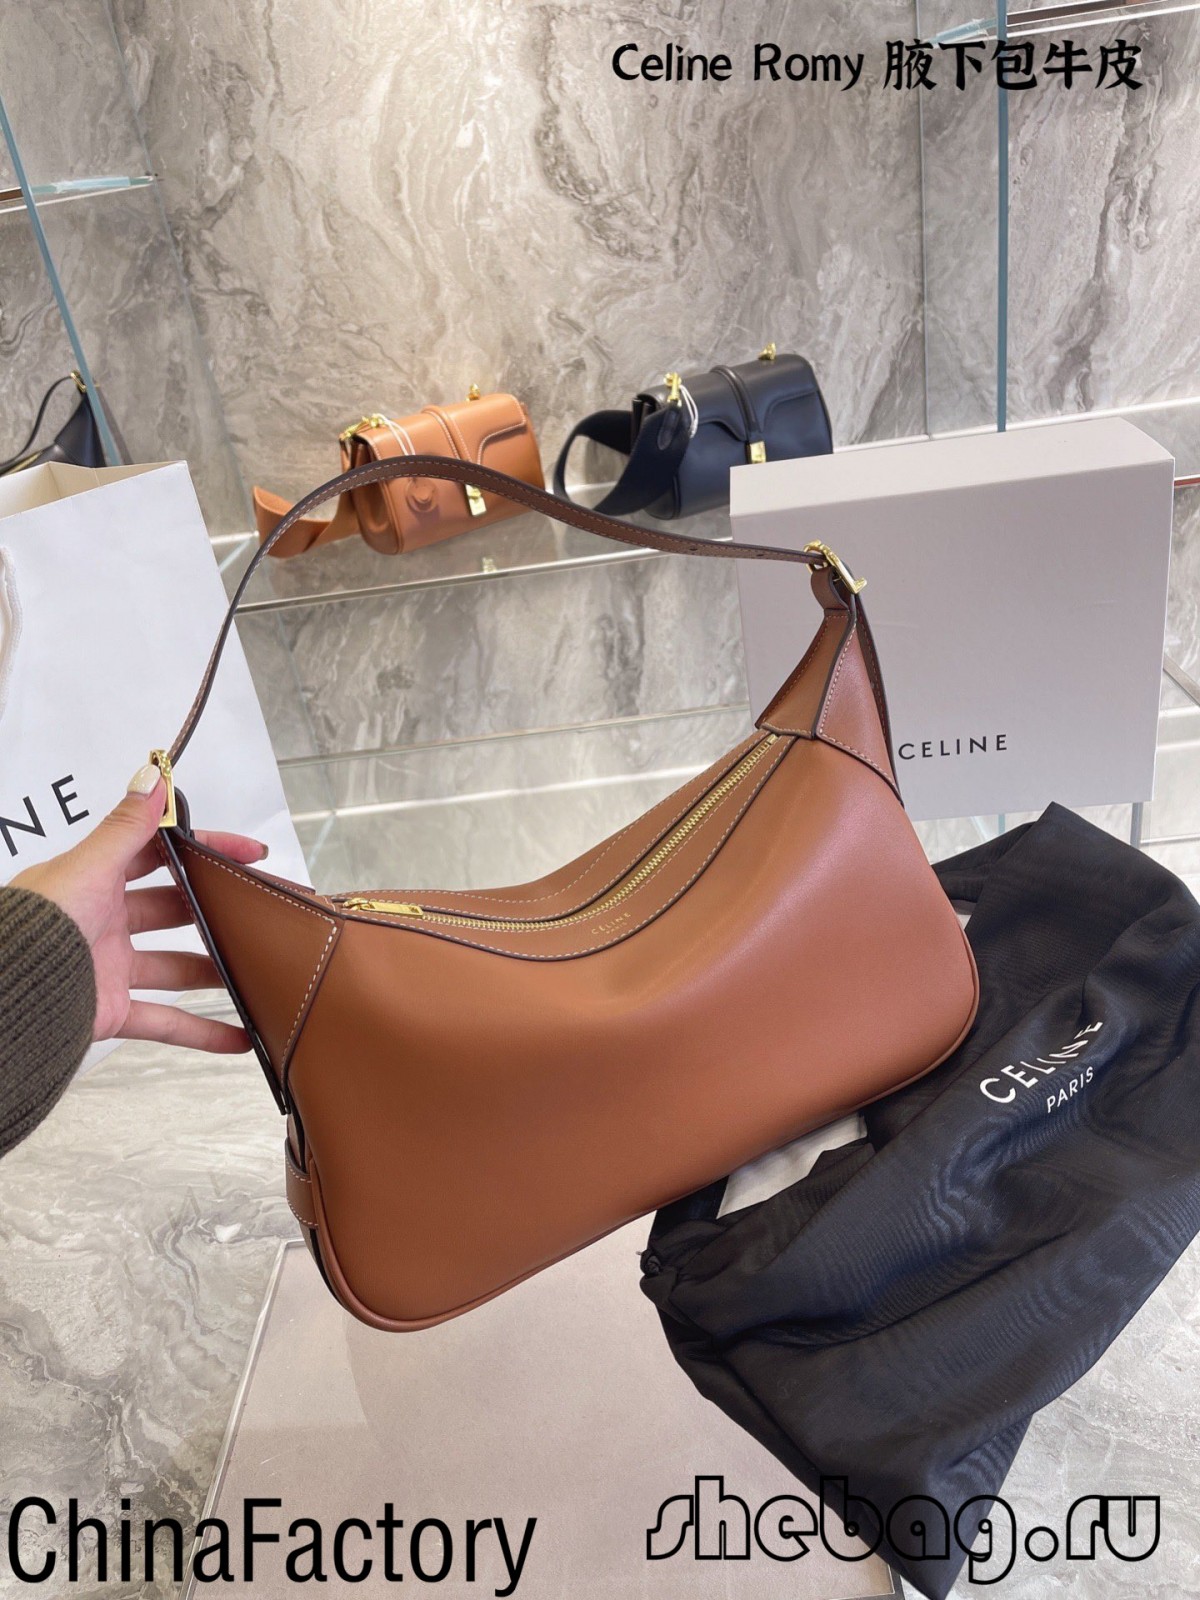 အကောင်းဆုံး ပုံစံတူ အိတ်များ ပြန်လည်သုံးသပ်ခြင်း- Celine Romy (2022 ထုတ်ဝေမှု)- အကောင်းဆုံး အရည်အသွေး အတု Louis Vuitton Bag အွန်လိုင်းစတိုး၊ ပုံစံတူ ဒီဇိုင်နာ အိတ် ru